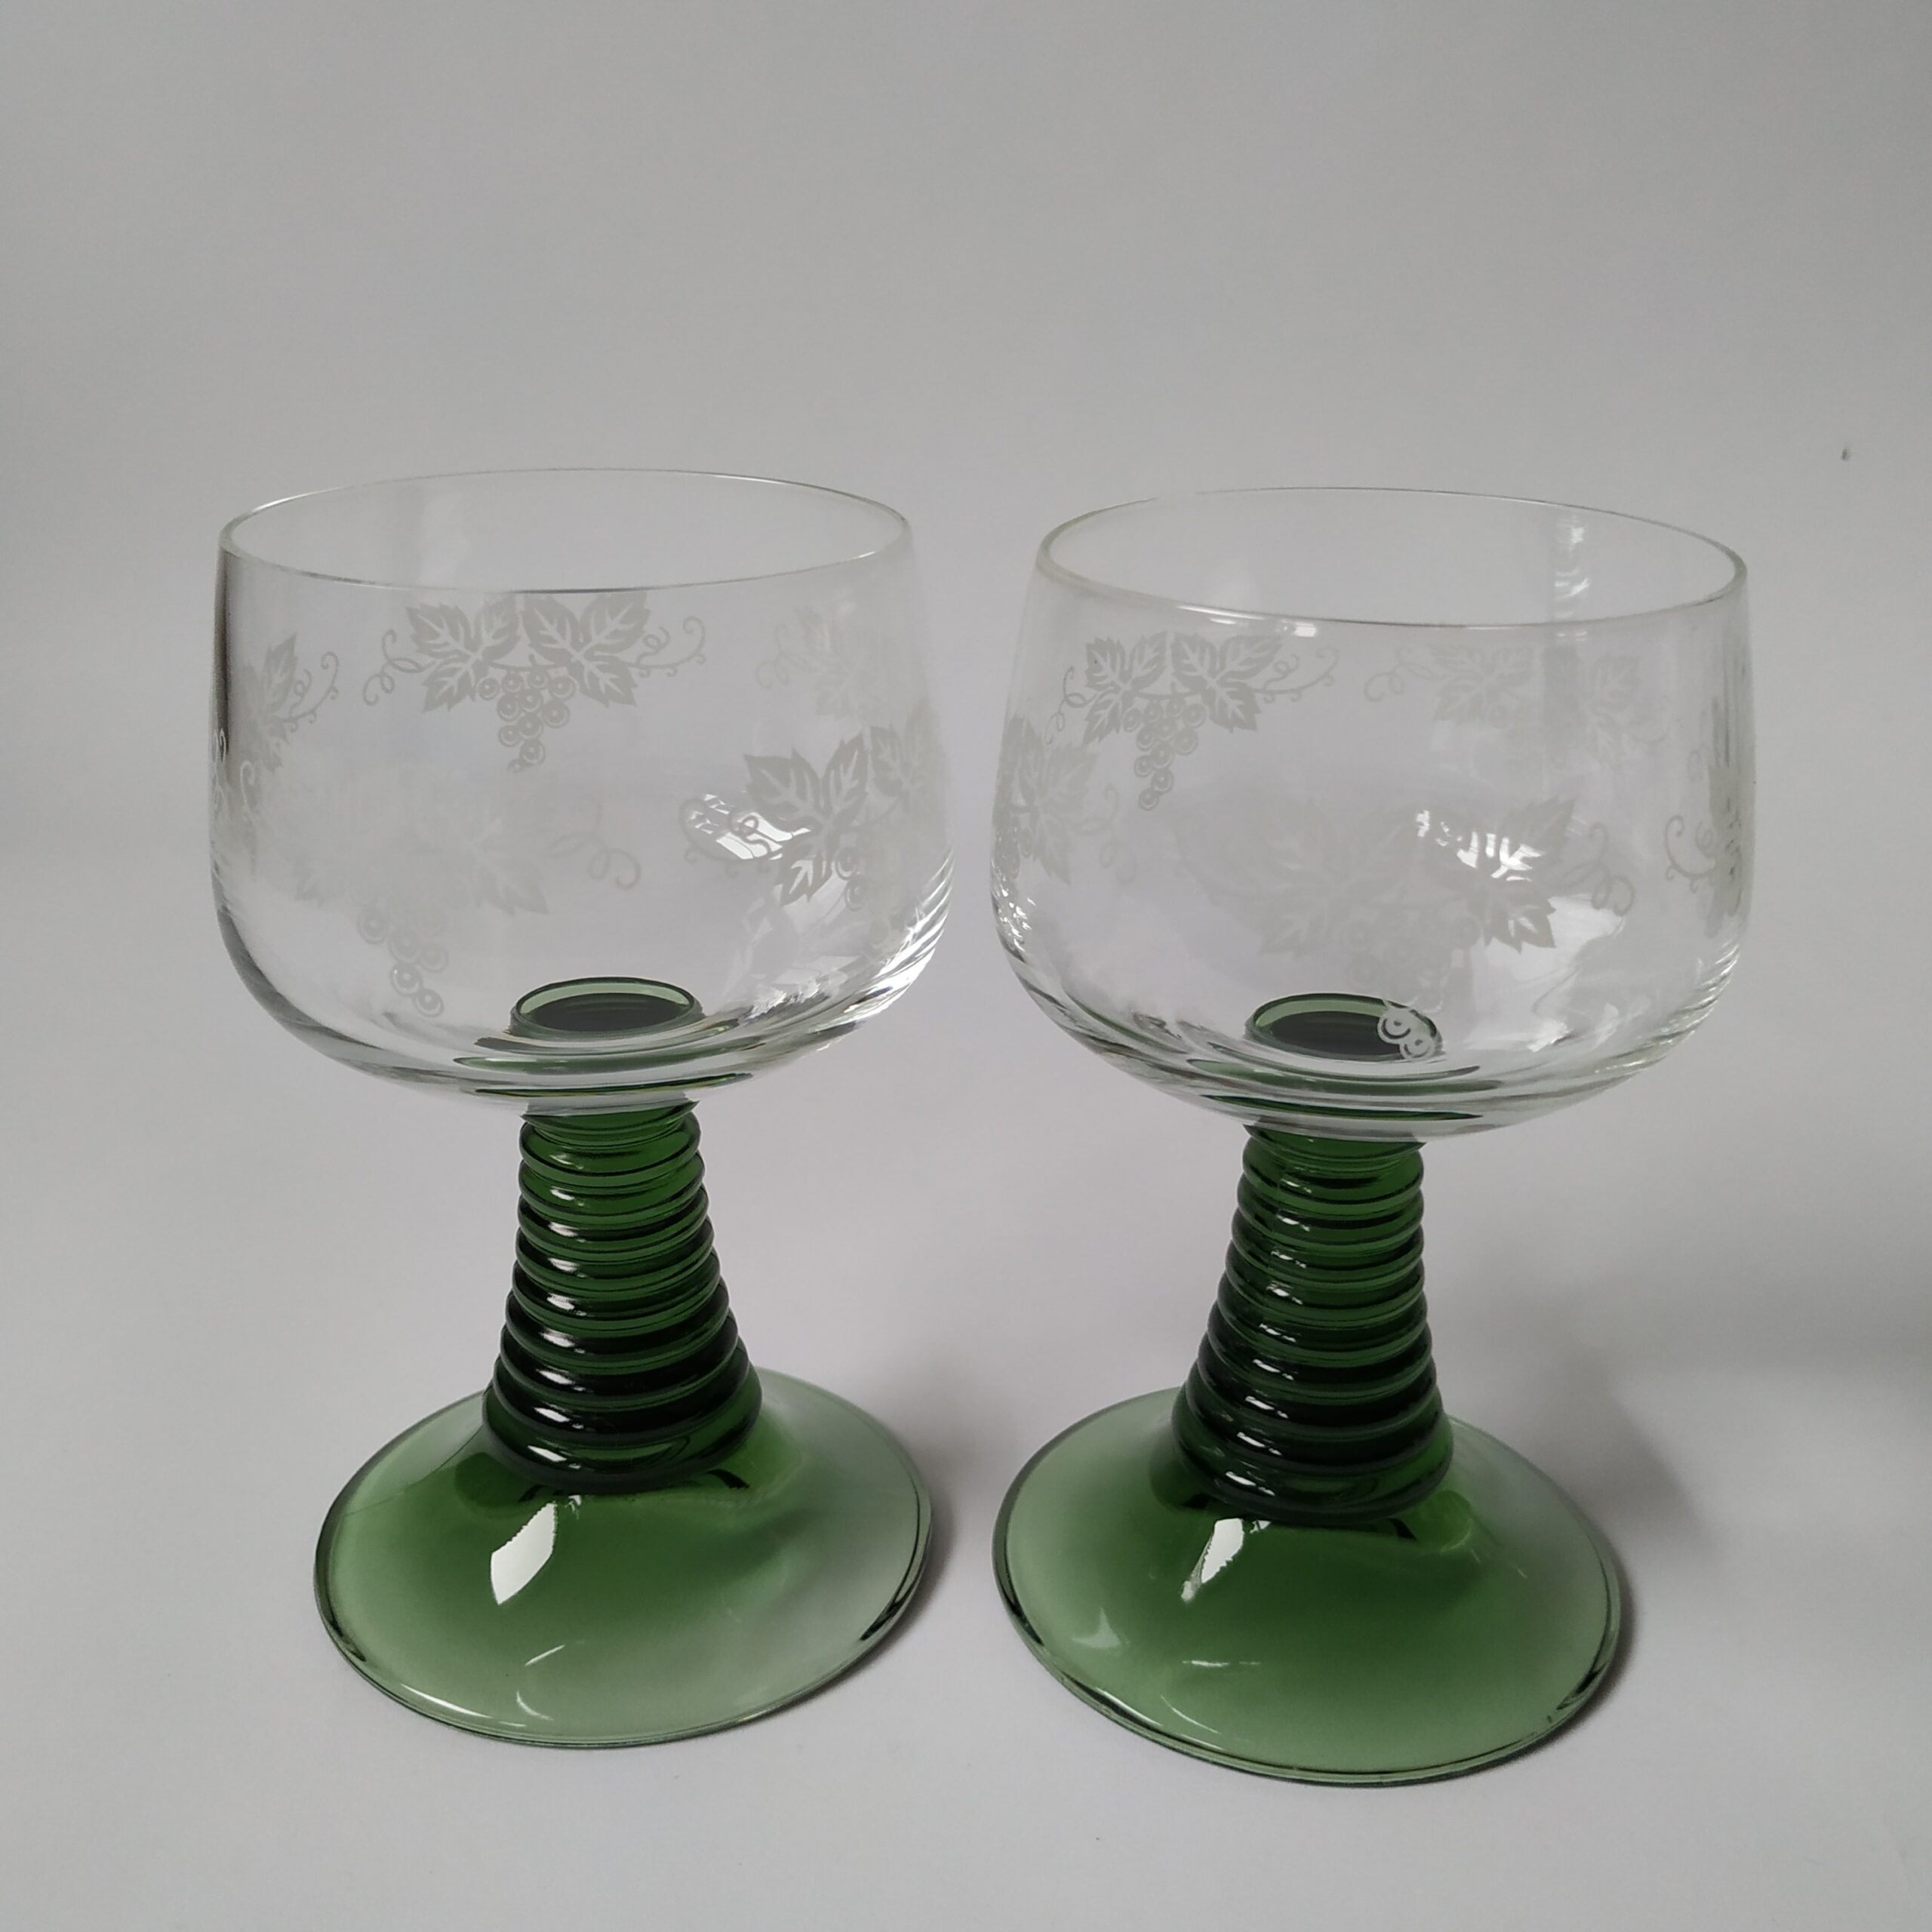 Wijnglazen – moezelglazen met groene voet en afbeelding druiventak – inhoud 200 ml – 2 stuks (2)